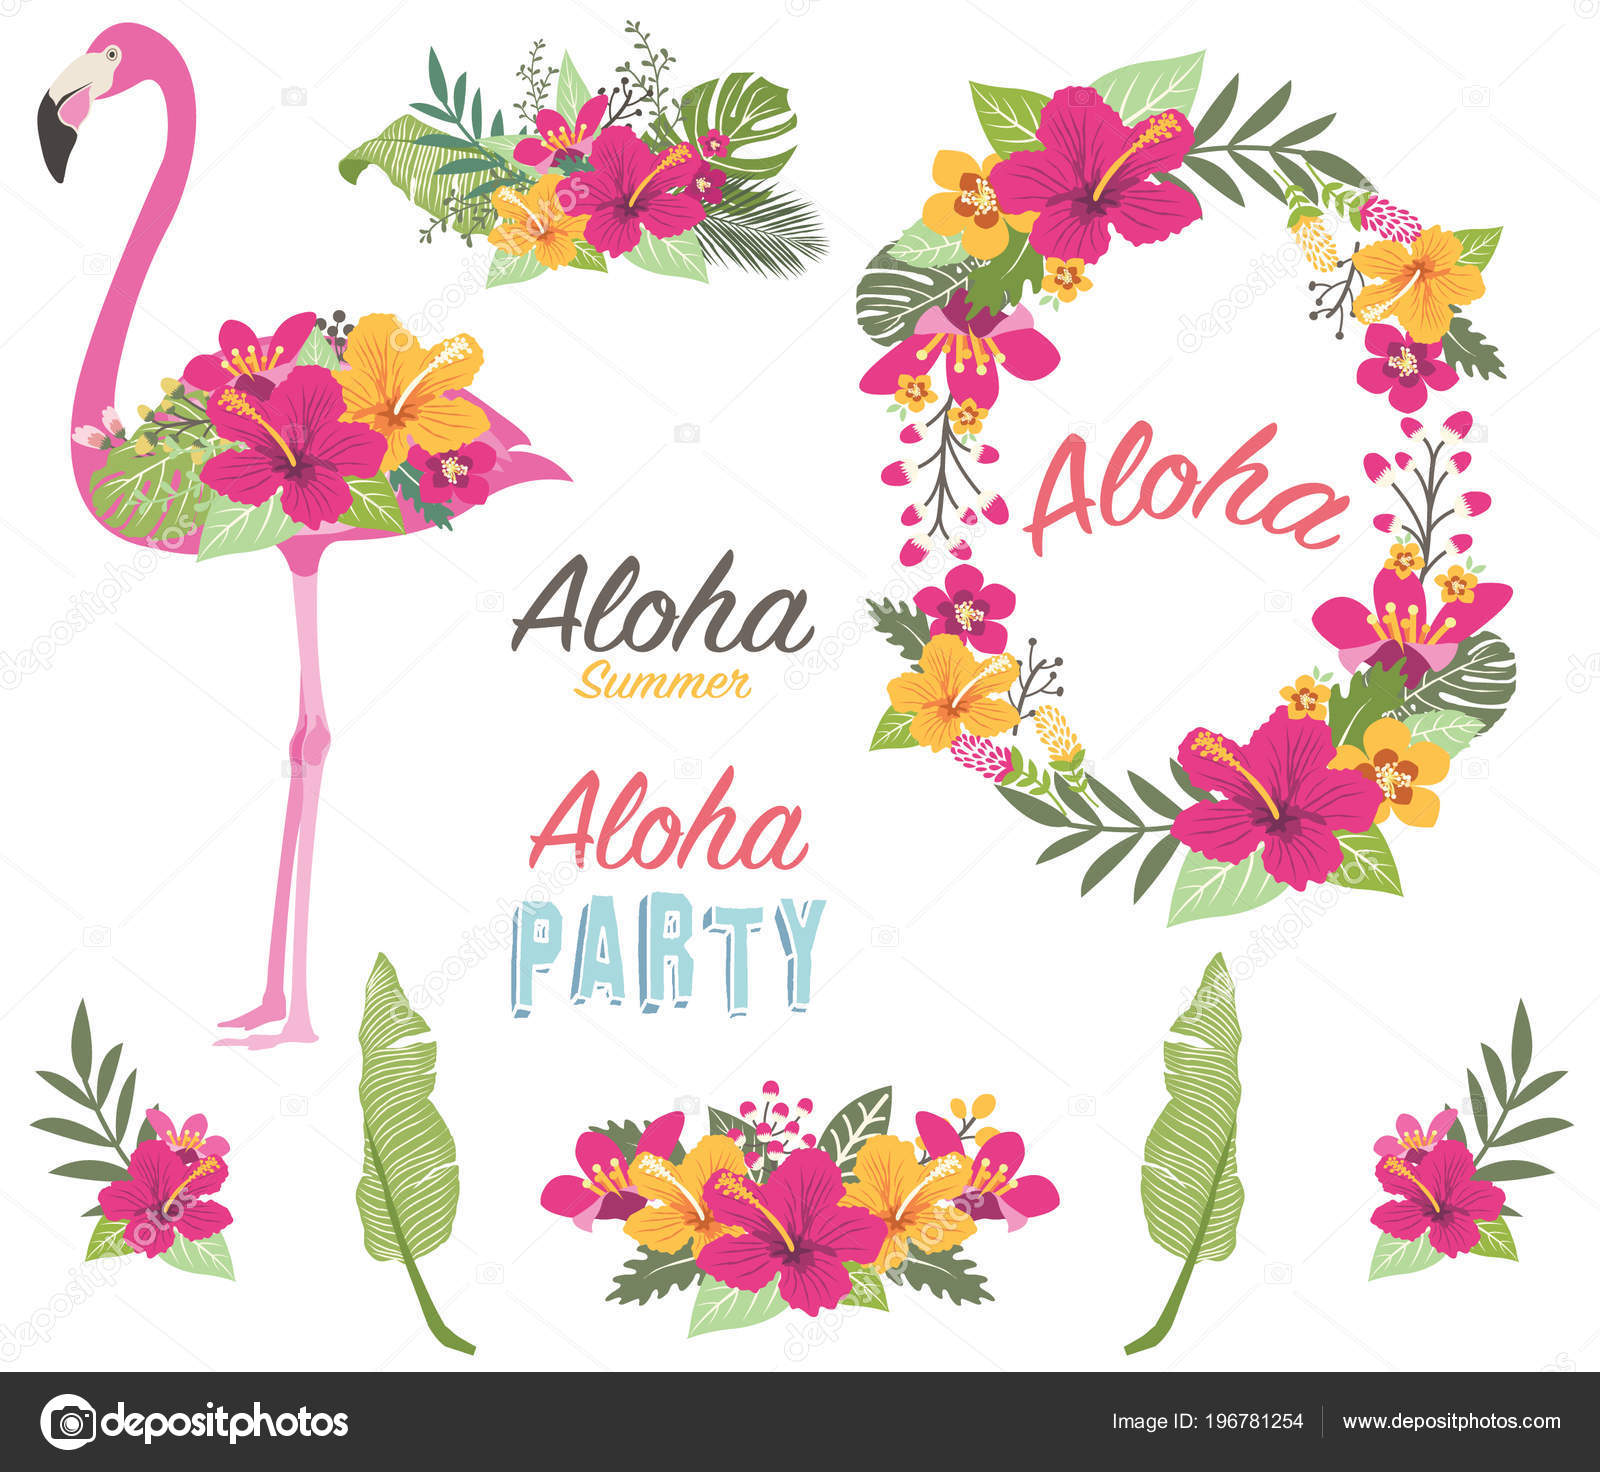 50 Aloha イラスト Free Illustration Material